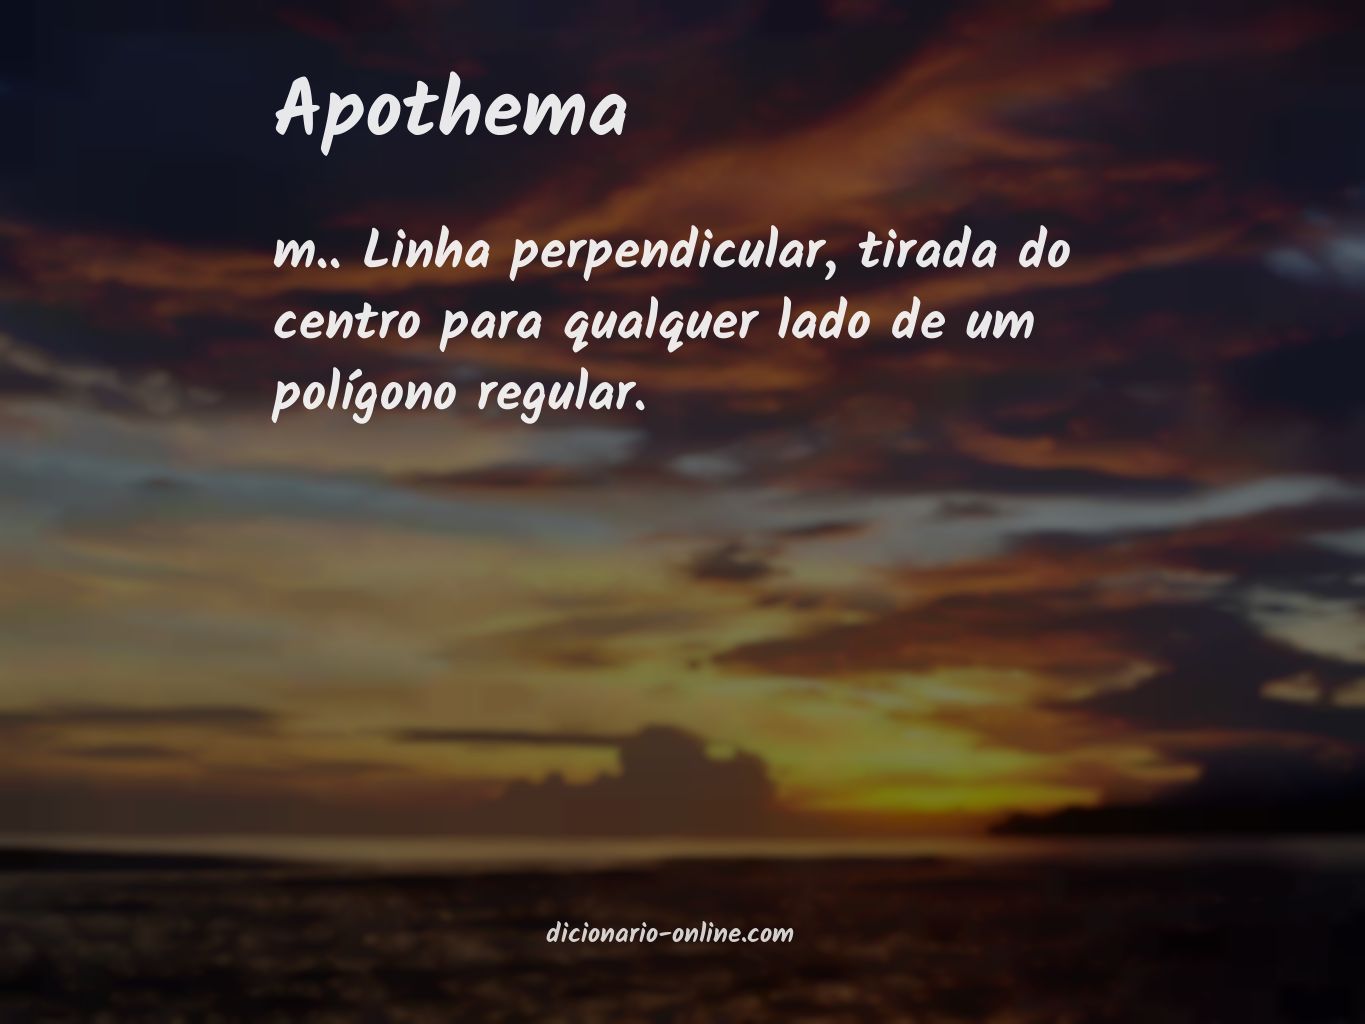 Significado de apothema